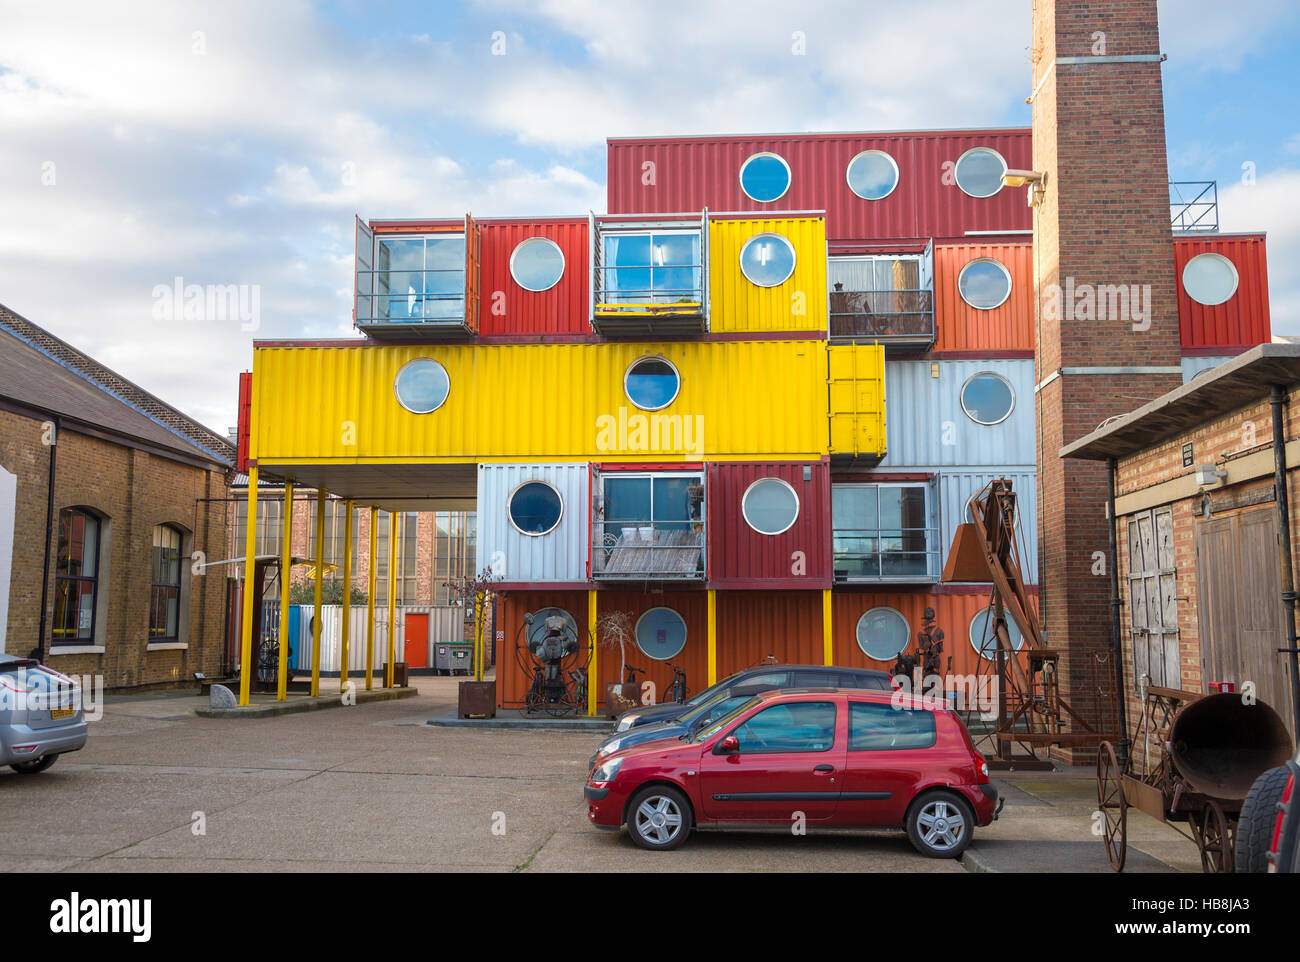 Maison construite à partir de conteneurs empilés colorés aka Container City, Trinity Buoy Wharf, London, UK Banque D'Images